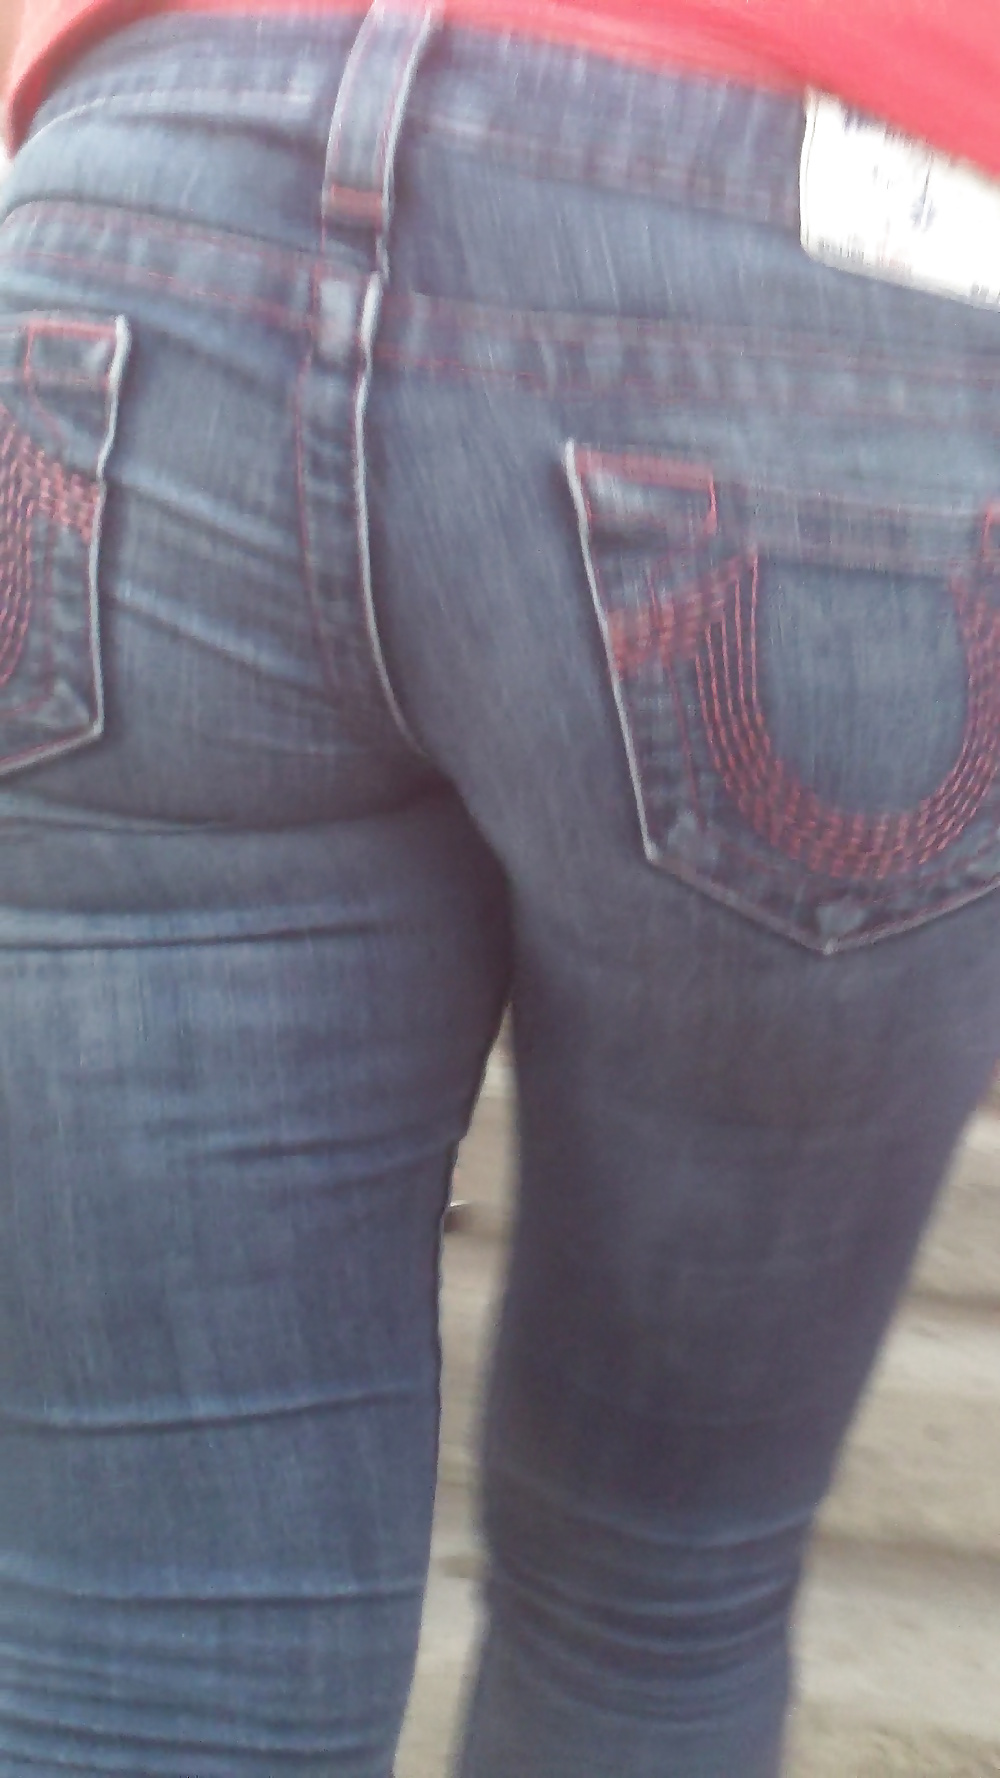 Popular teen girls ass & butt in jeans part 4  #26741234